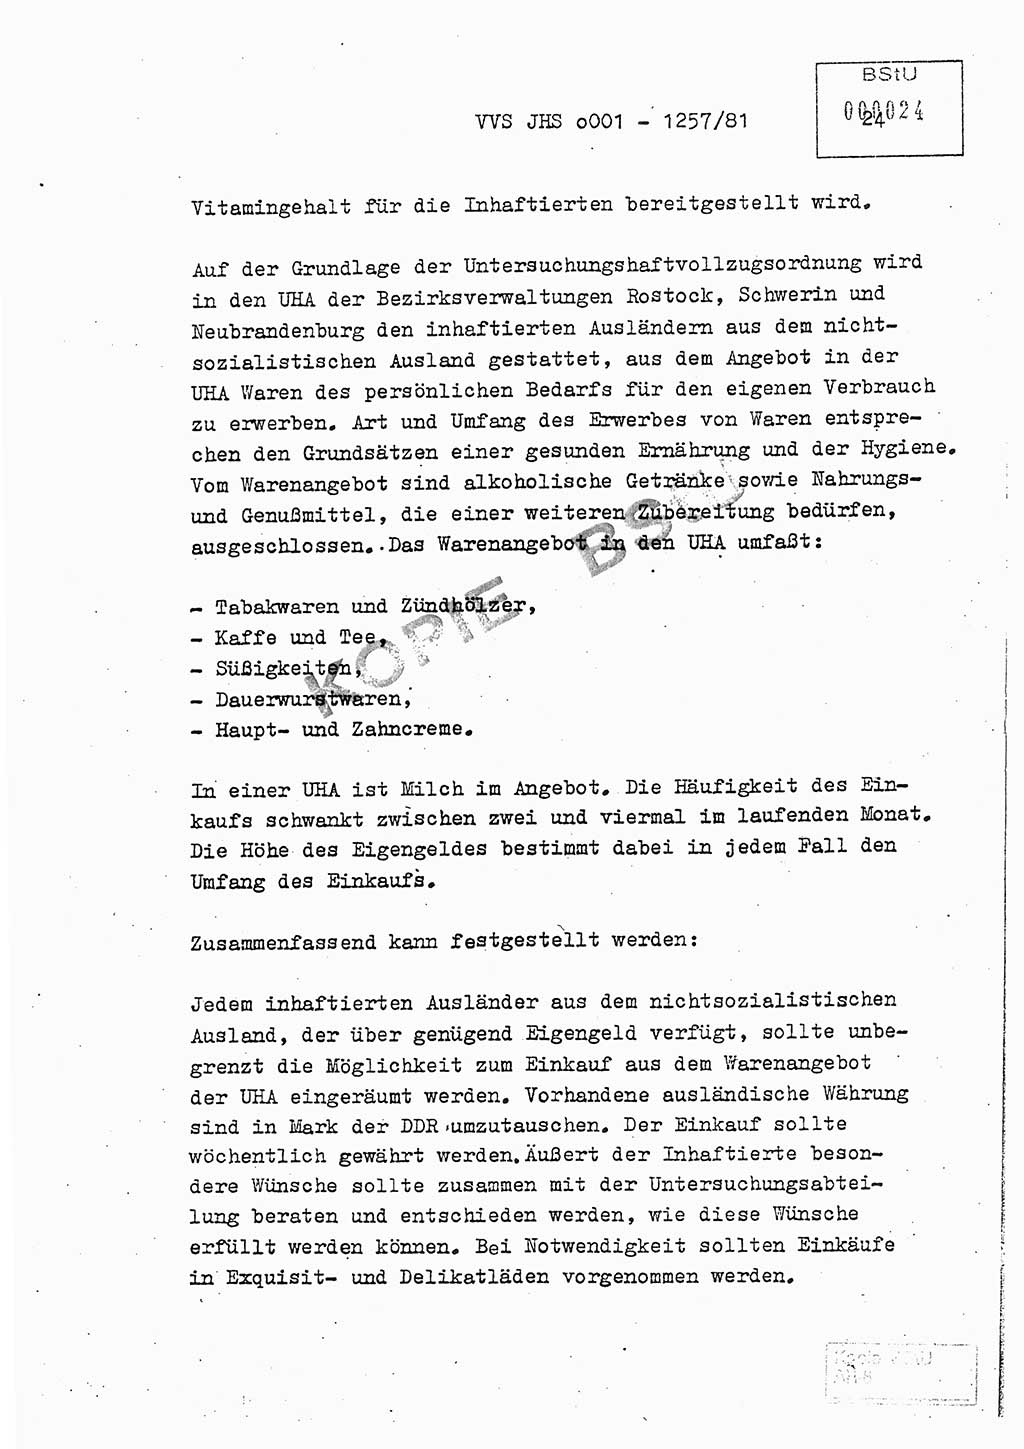 Fachschulabschlußarbeit Unterleutnant Dieter Möller (BV Rst. Abt. ⅩⅣ), Ministerium für Staatssicherheit (MfS) [Deutsche Demokratische Republik (DDR)], Juristische Hochschule (JHS), Vertrauliche Verschlußsache (VVS) o001-1257/81, Potsdam 1982, Seite 24 (FS-Abschl.-Arb. MfS DDR JHS VVS o001-1257/81 1982, S. 24)